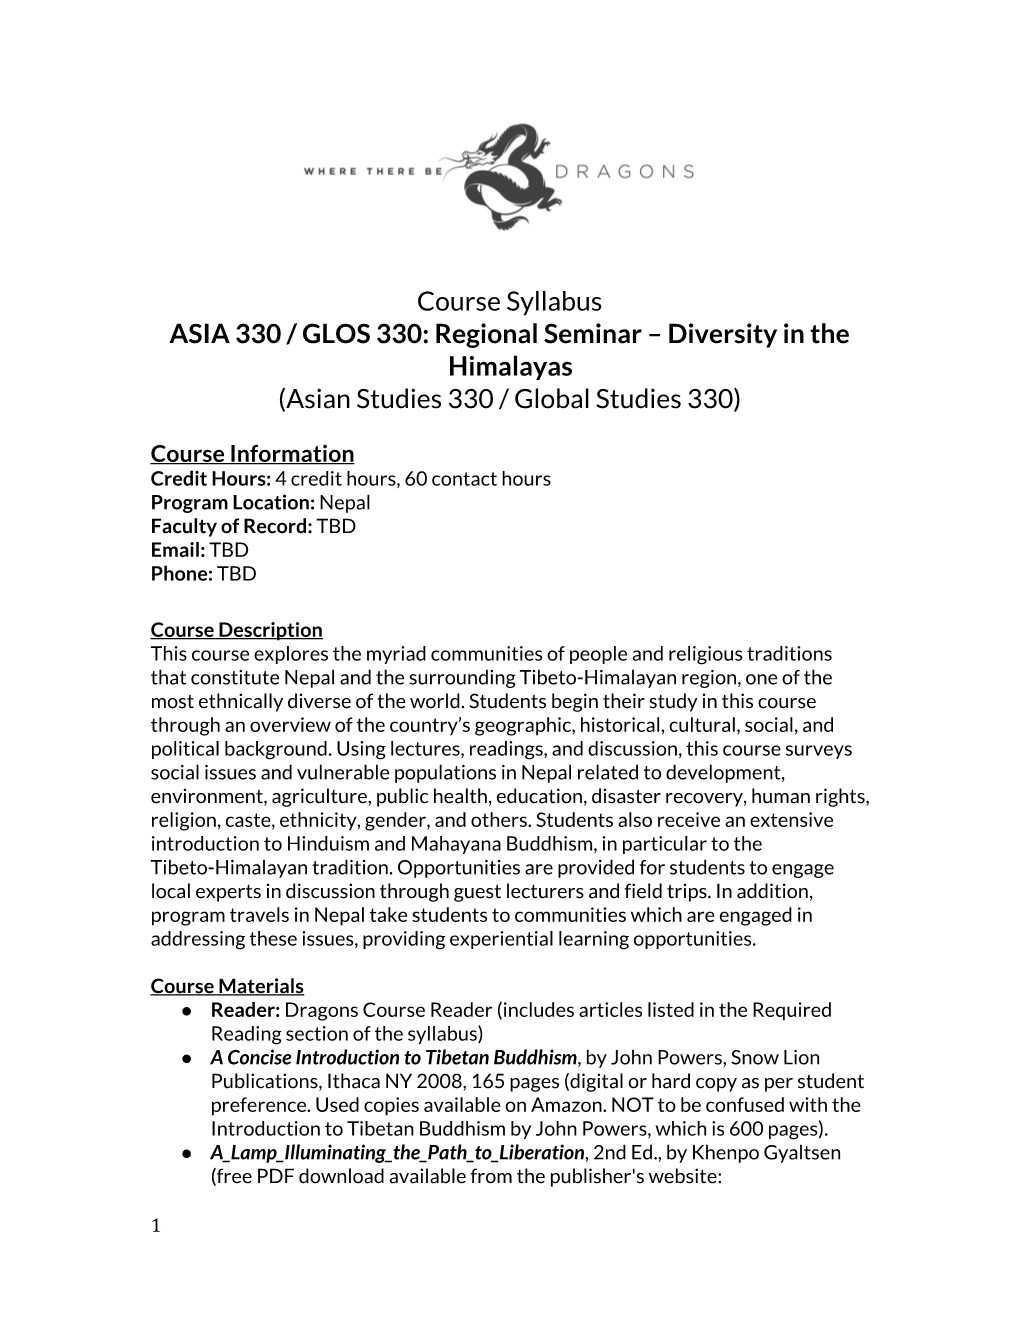 Regional Seminar – Diversity in the Himalayas (Asian Studies 330 / Global Studies 330)